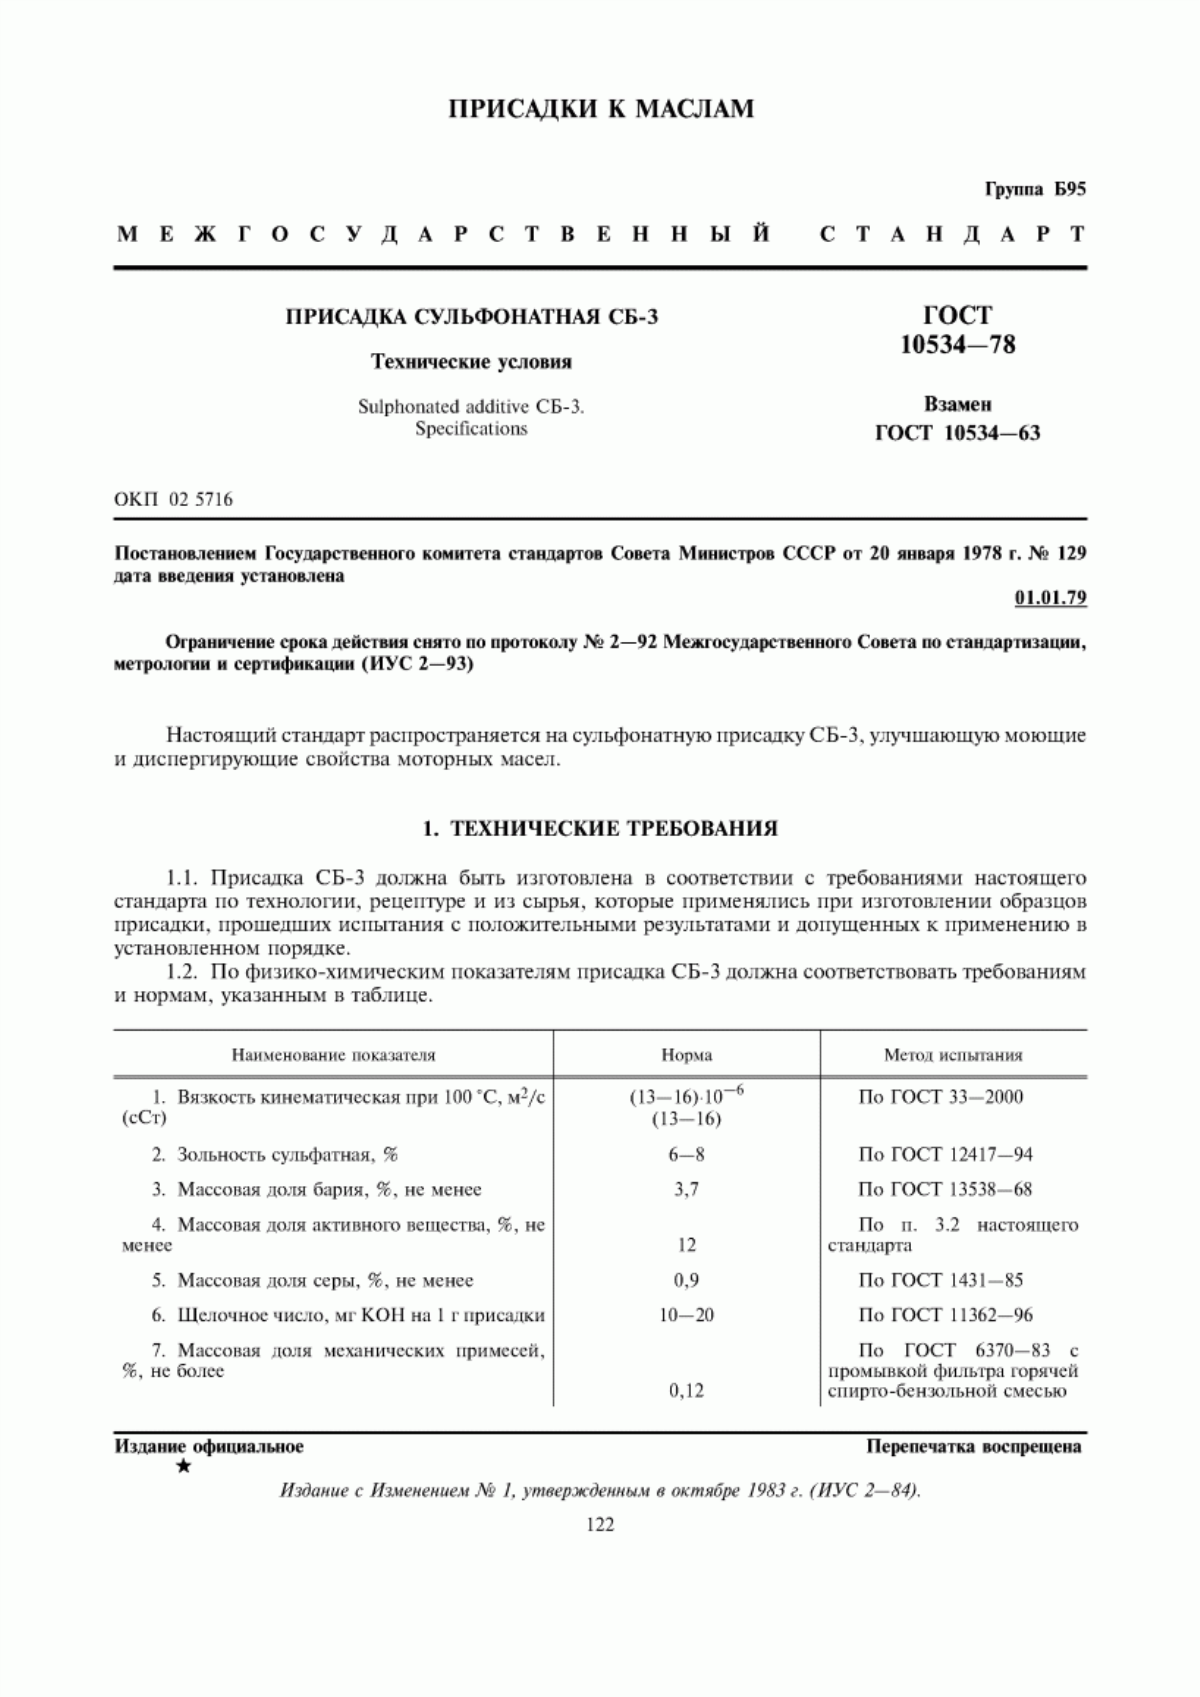 ГОСТ 10534-78 Присадка сульфонатная СБ-3. Технические условия